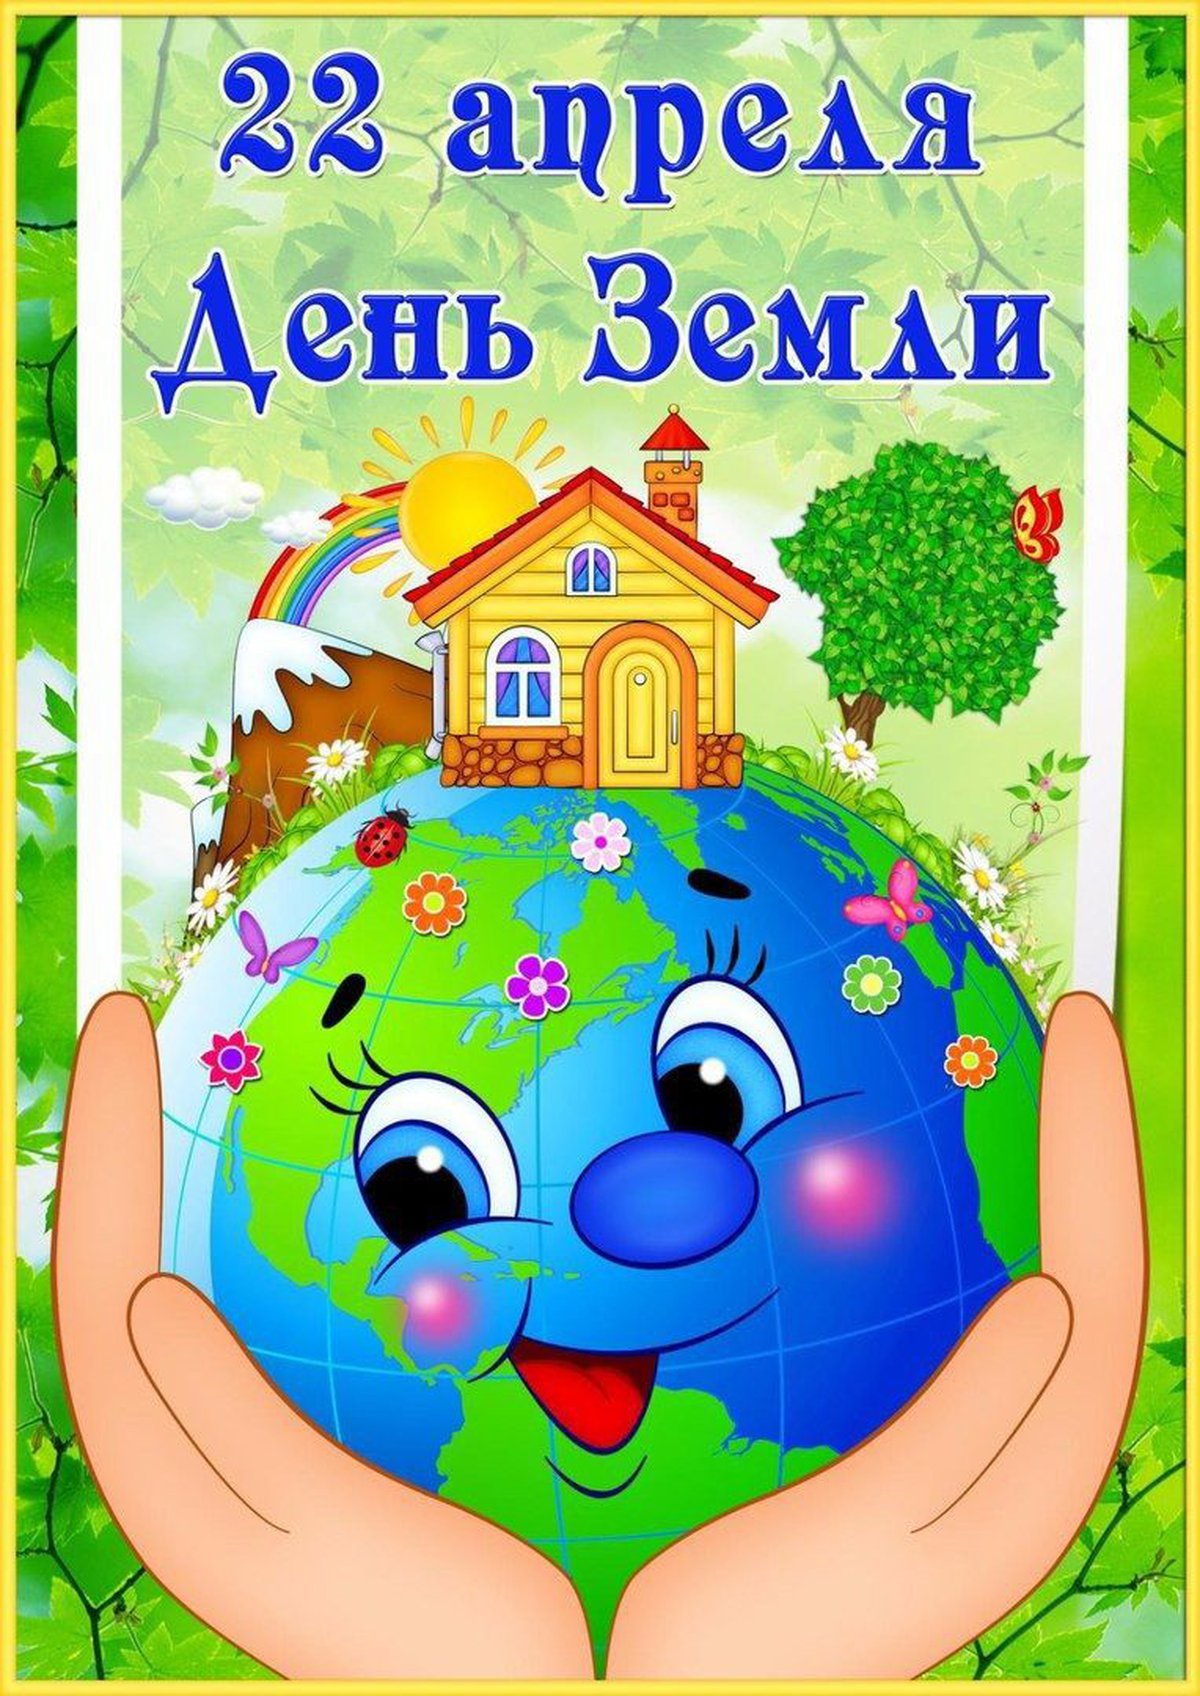 Всемирный день земли в апреле. День земли. Всемирный день земли. День земли ПВ детском саду. 22 Апреля день земли.